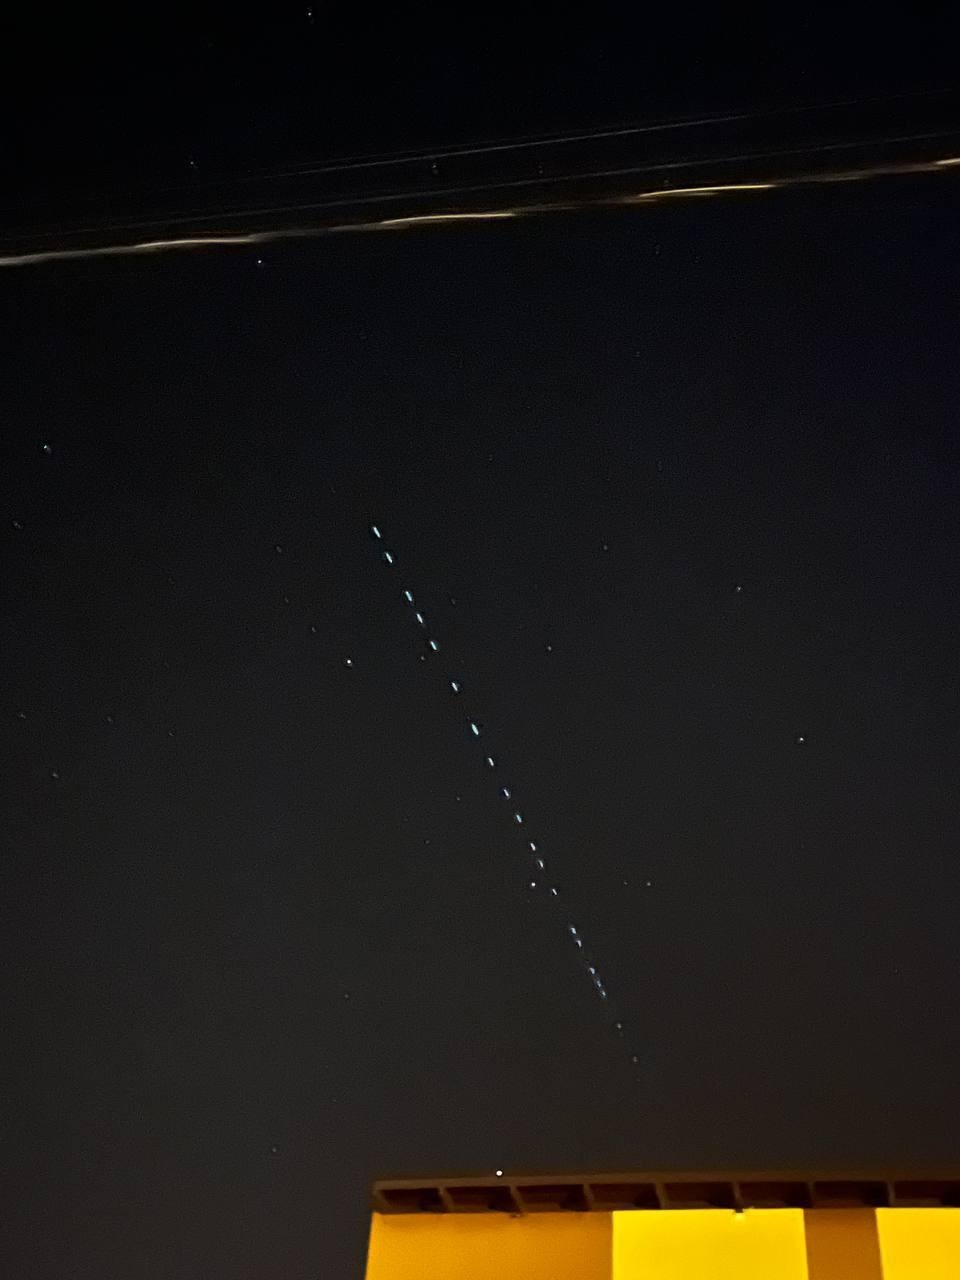 Спутники Starlink над Белгородом